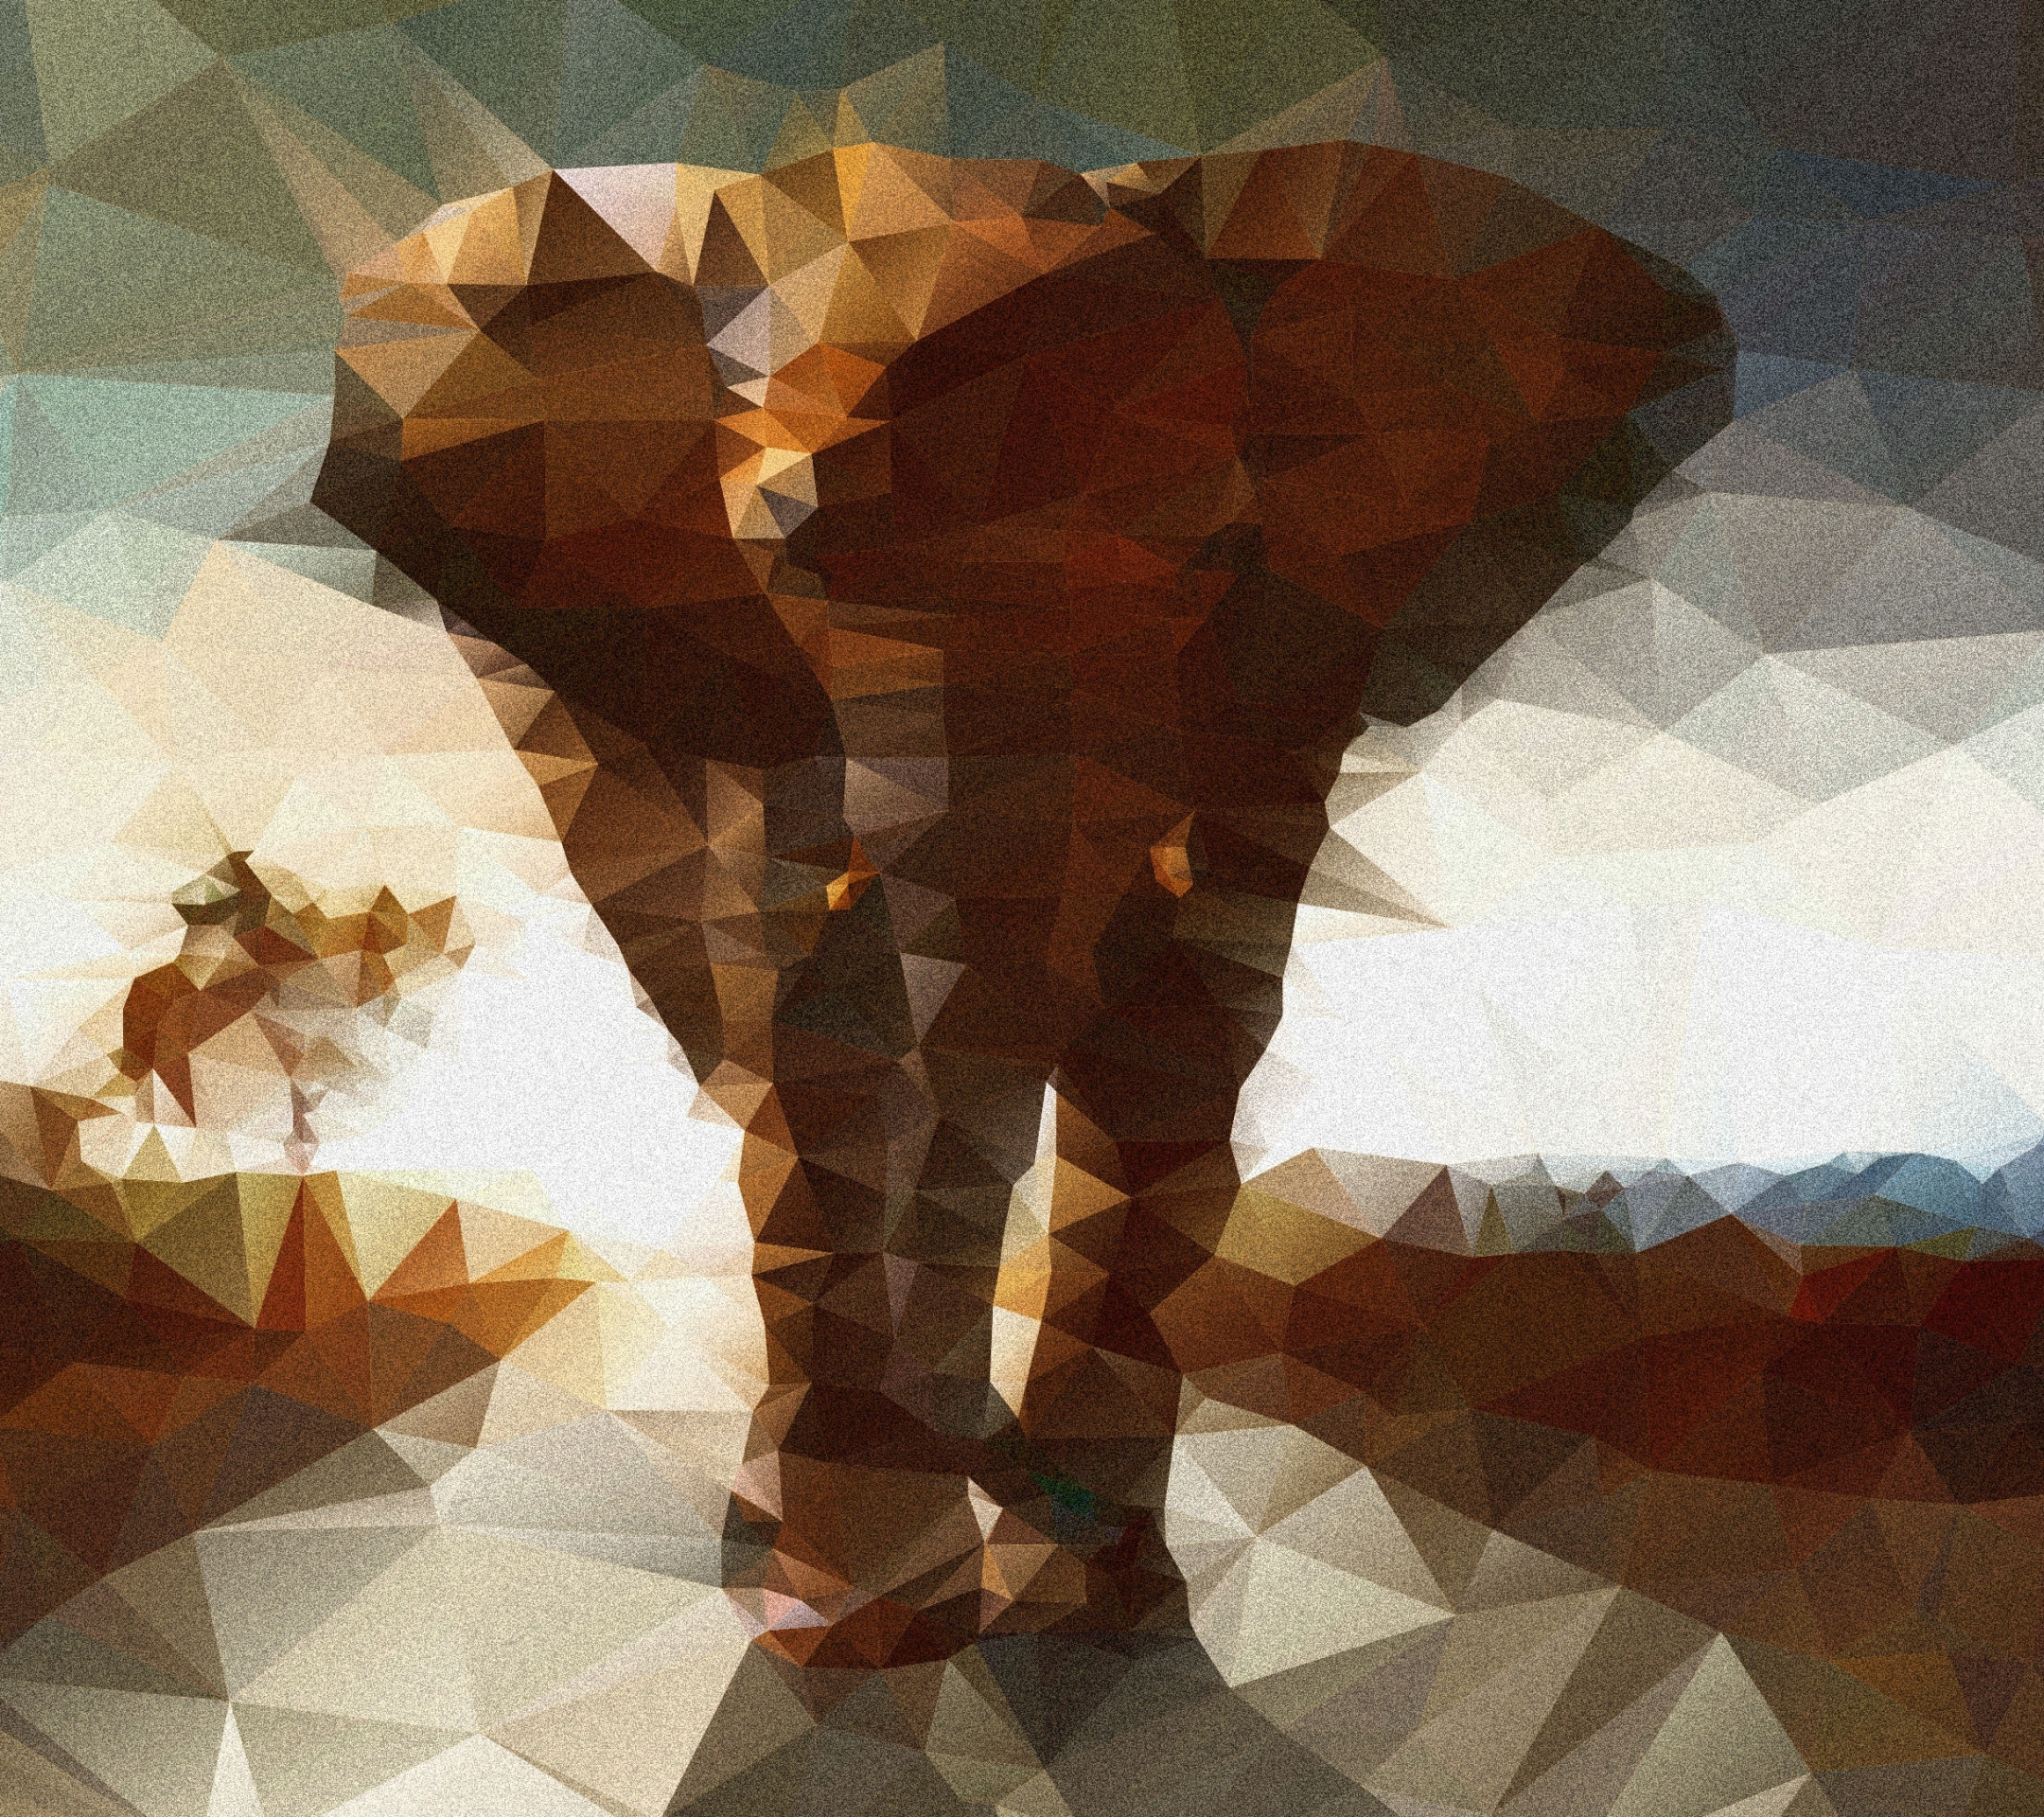 Descarga gratuita de fondo de pantalla para móvil de Animales, Elefantes, Elefante, Elefante Africano De Sabana.